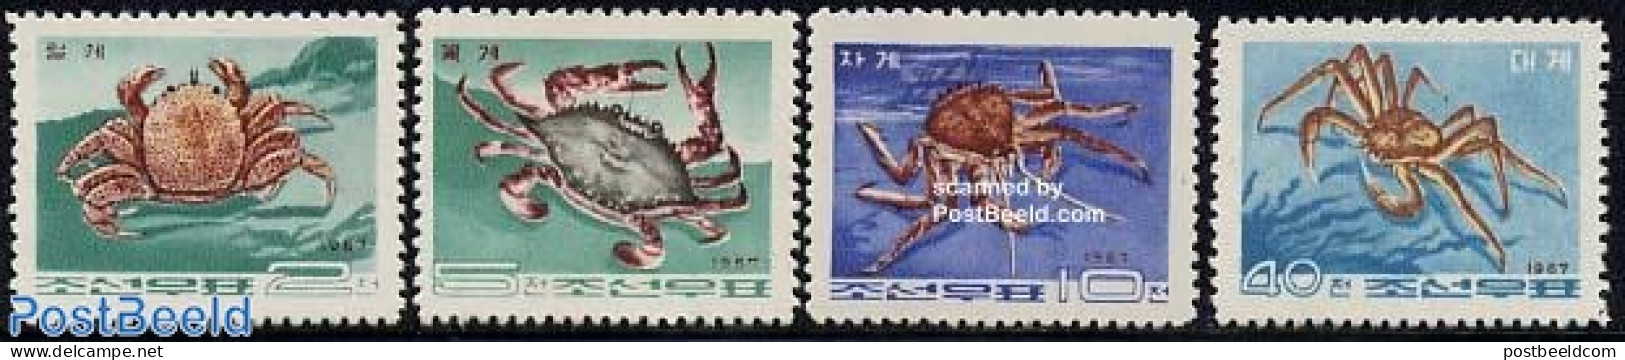 Korea, North 1967 Crabs 4v, Mint NH, Nature - Shells & Crustaceans - Crabs And Lobsters - Marine Life